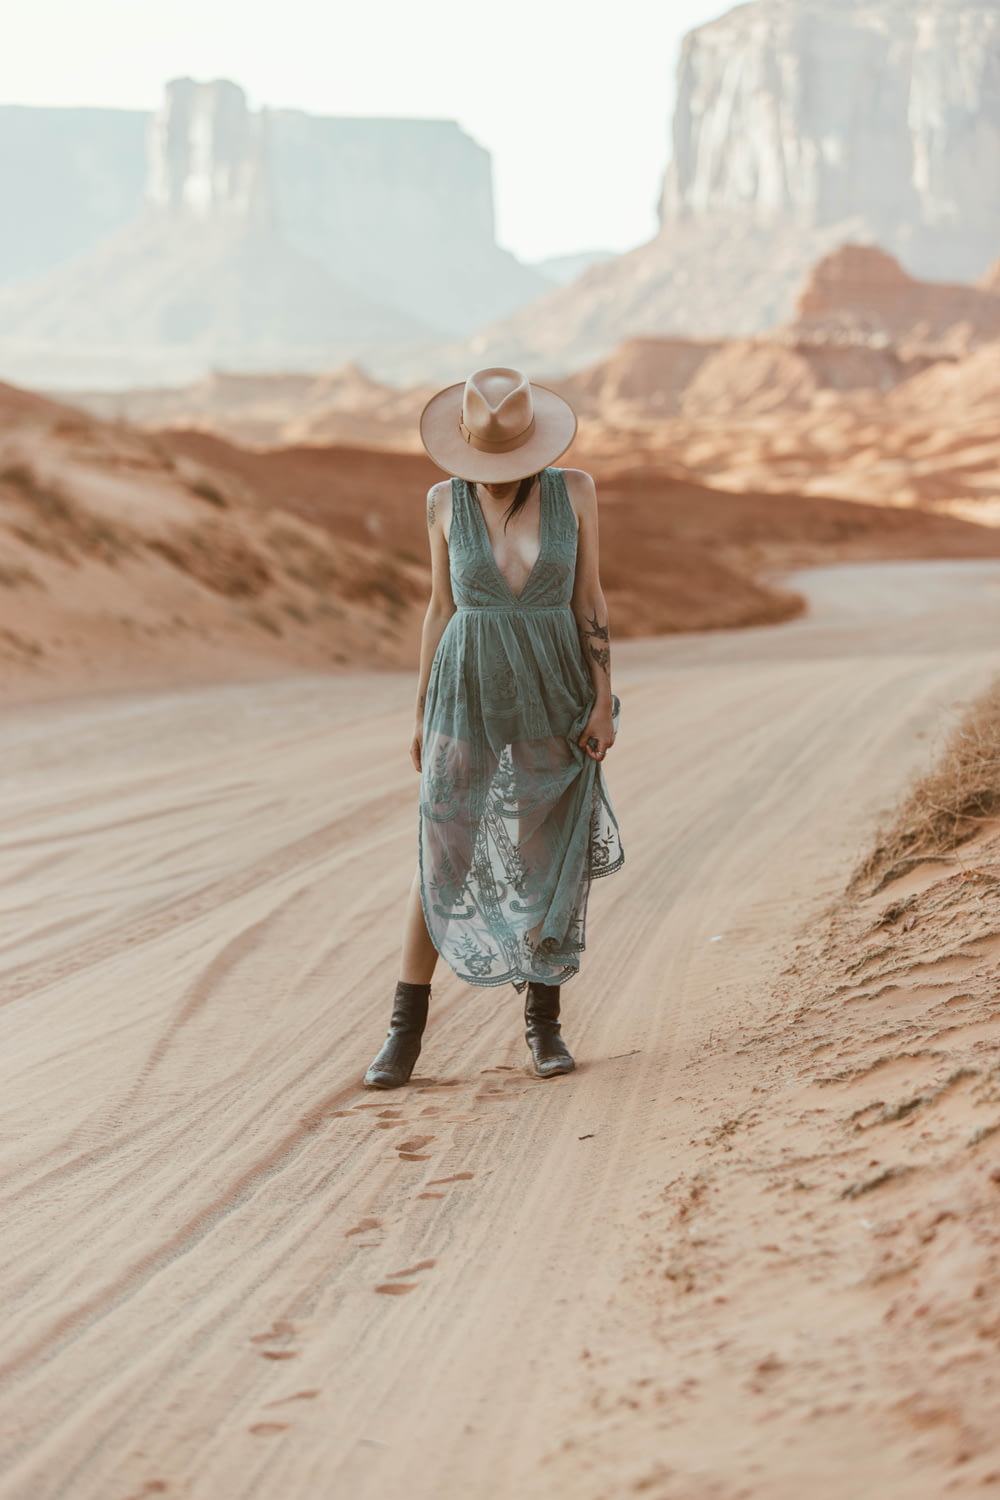 Frau in grünem Tanktop und blauem Rock geht tagsüber auf braunem Sand